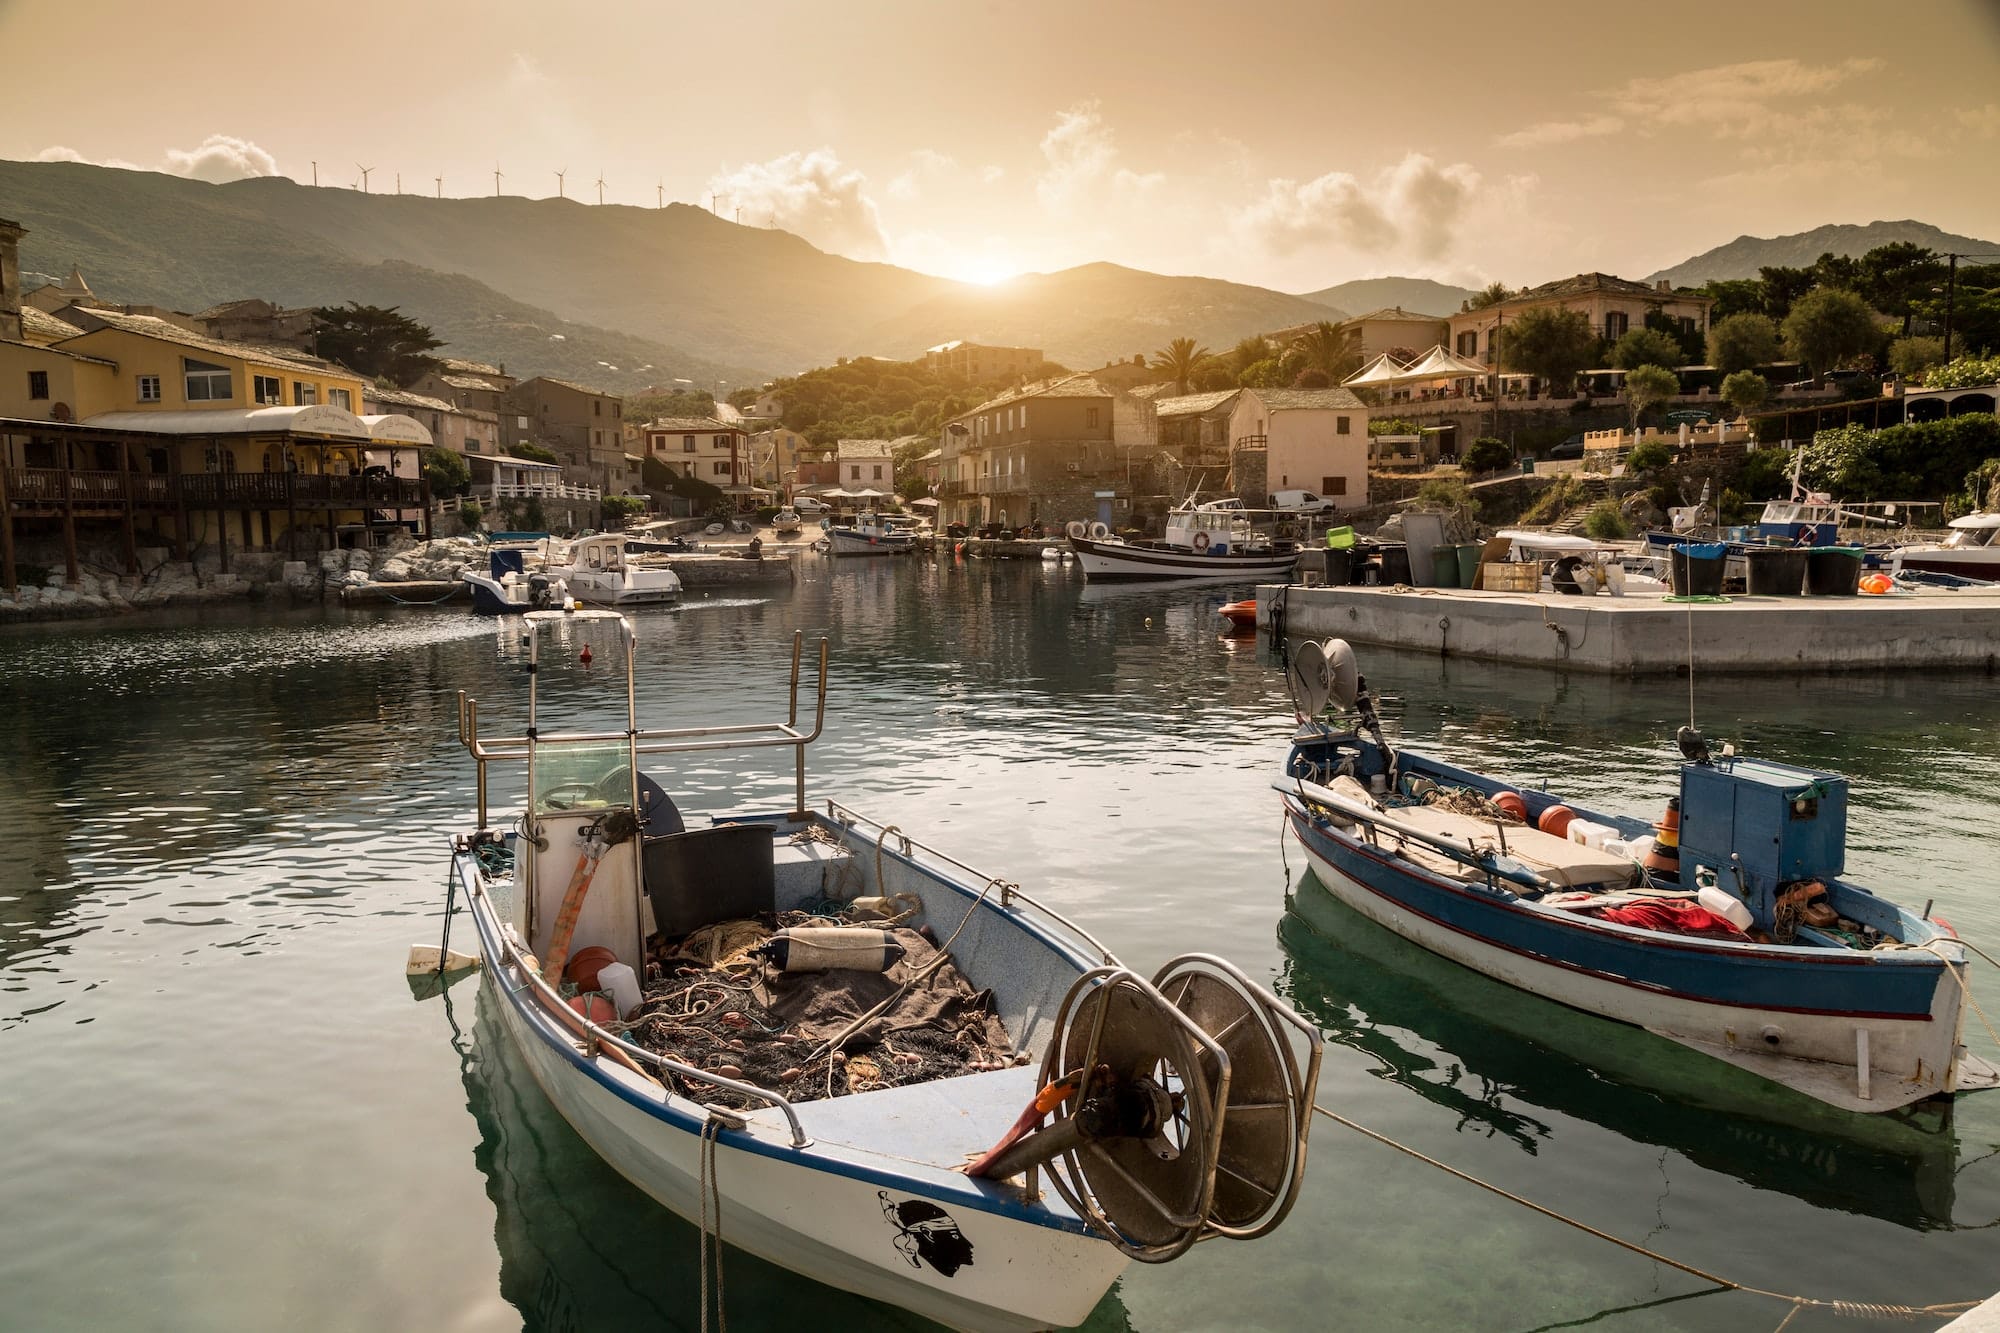 Les trésors naturels de la Corse : un voyage inoubliable entre mer et montagnes